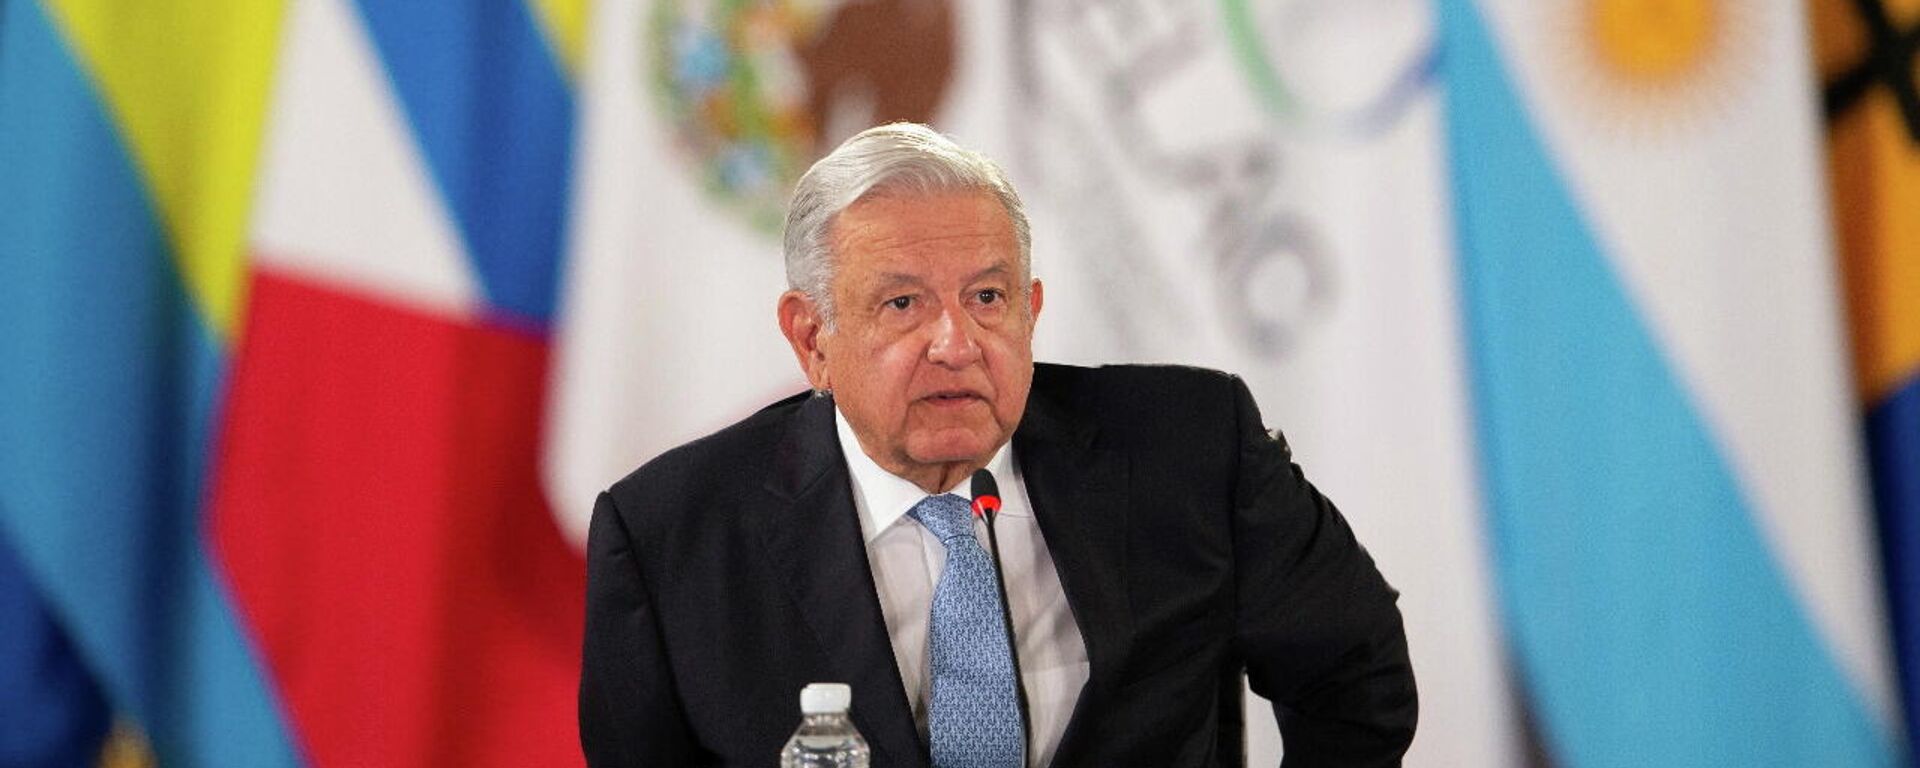 Andrés Manuel López Obrador, presidente de México - Sputnik Mundo, 1920, 20.09.2021